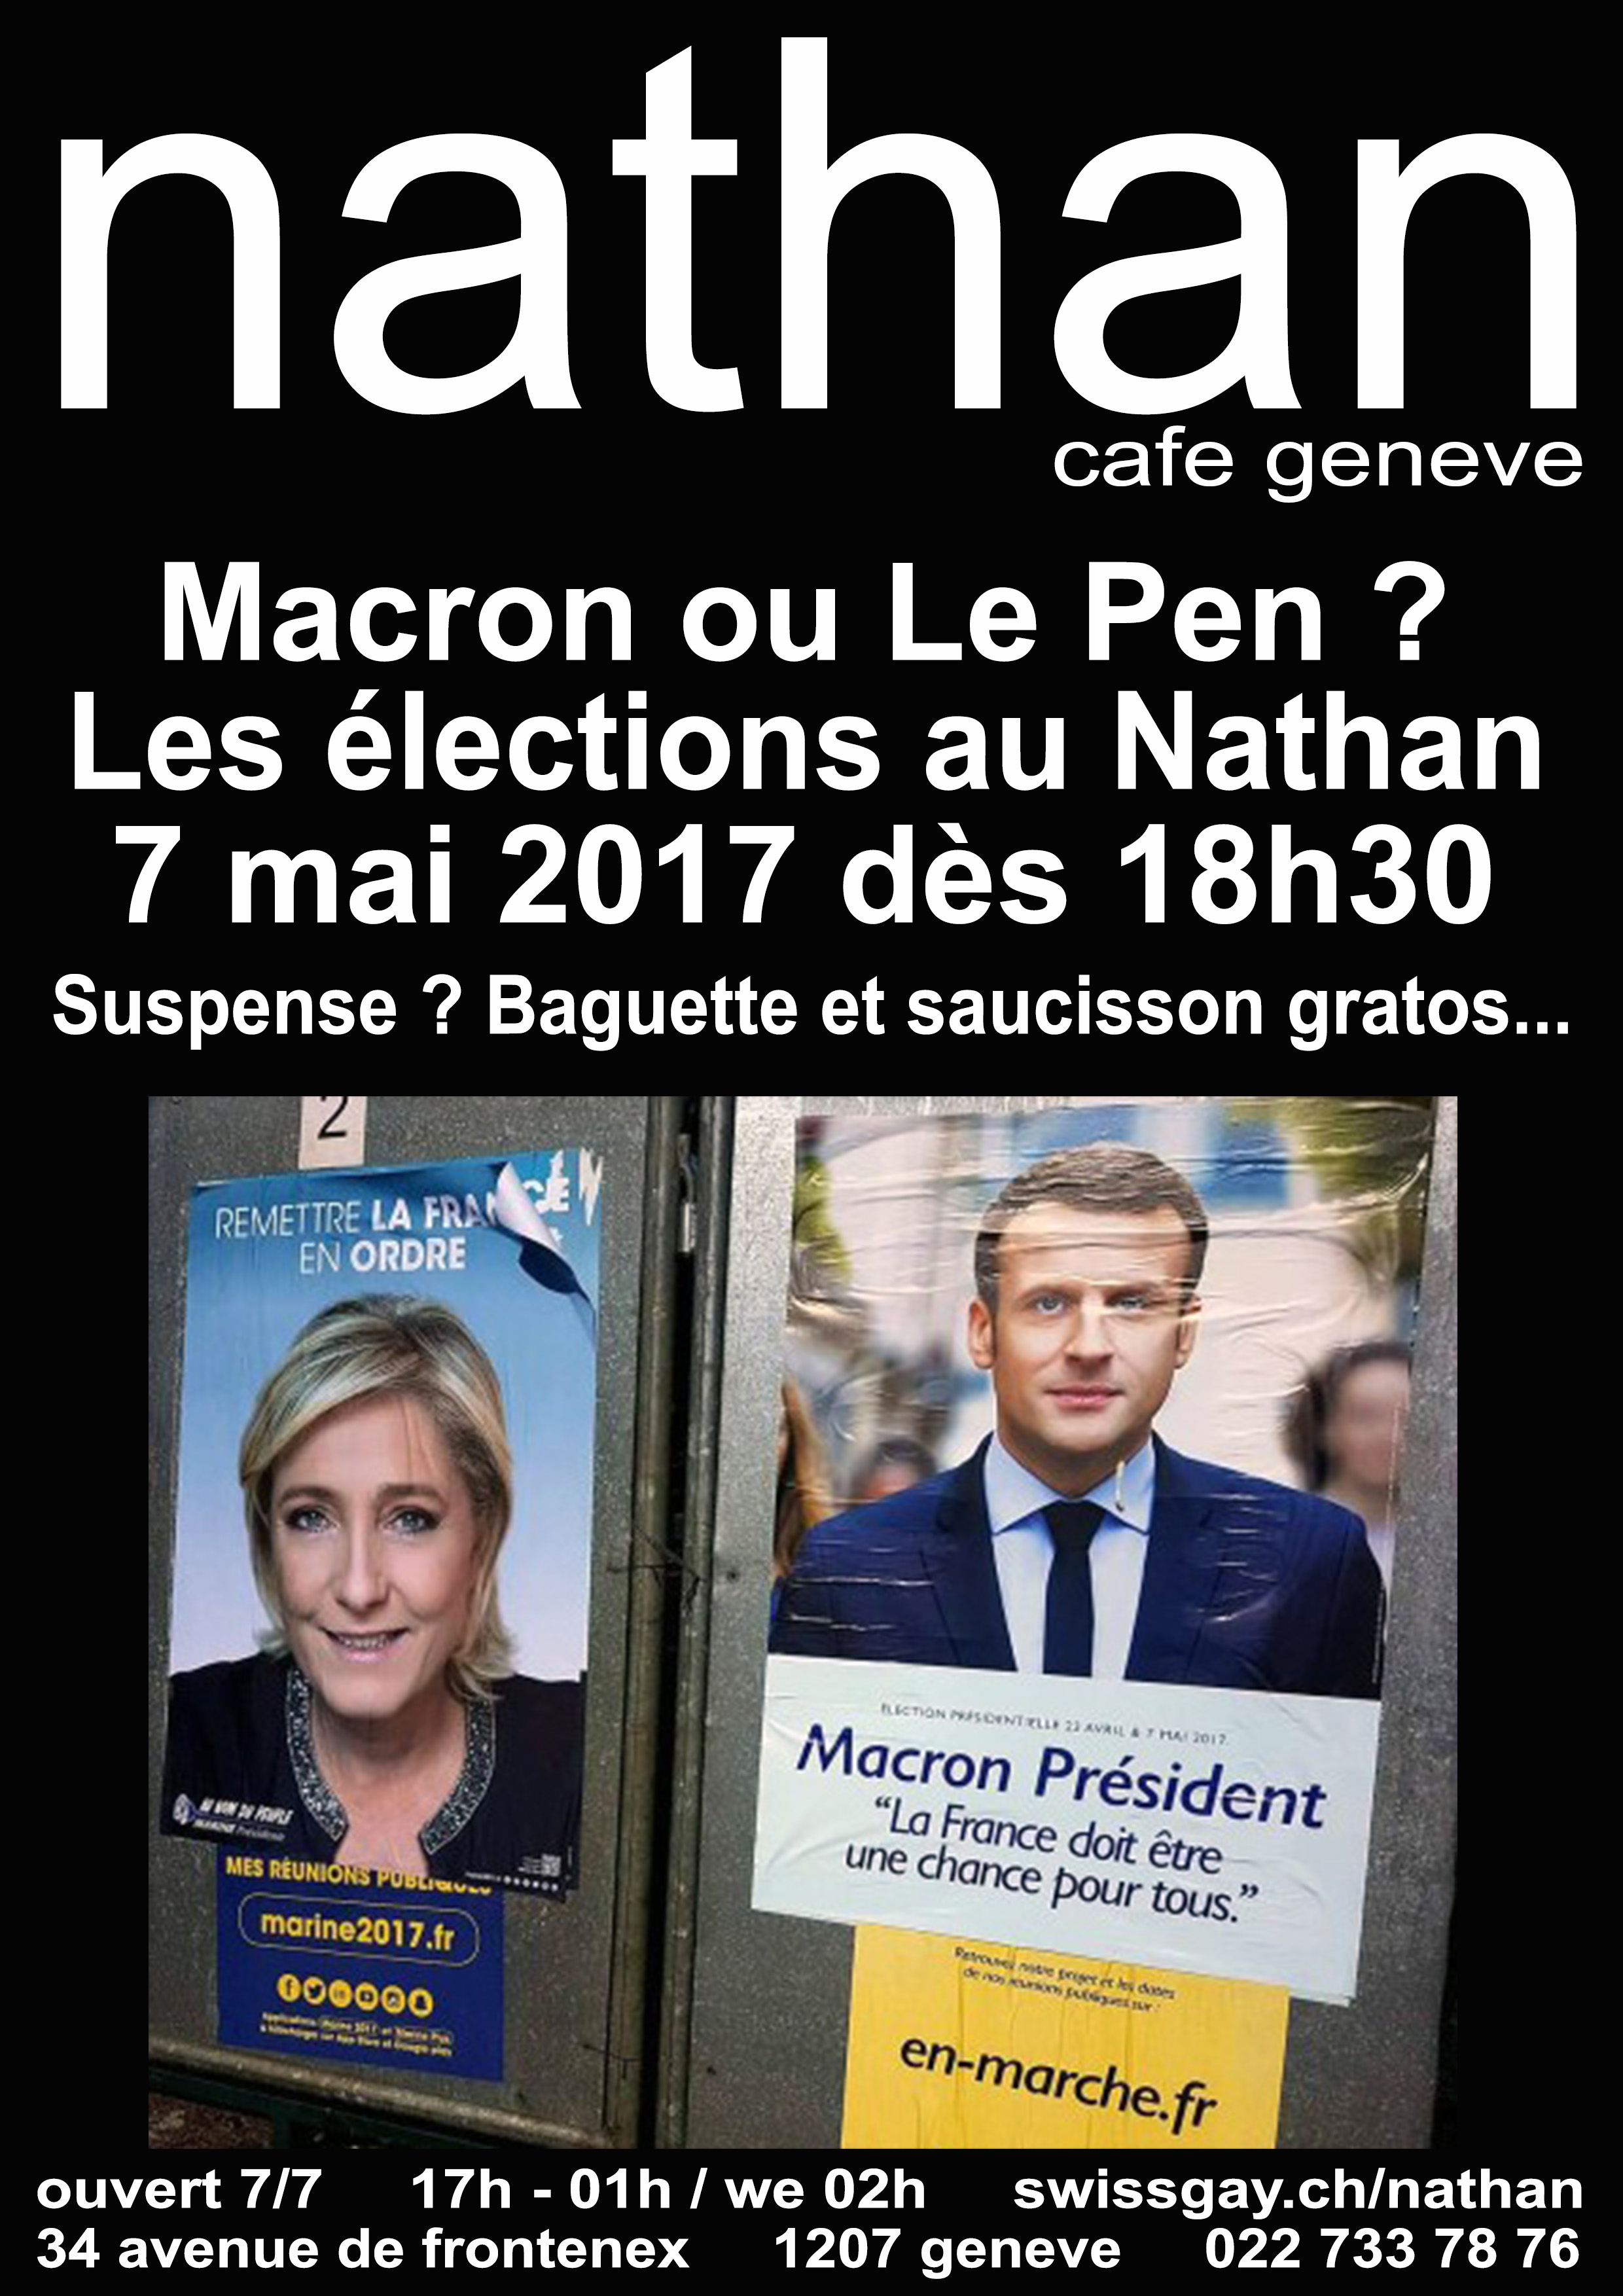 Nathan Café Genève - Les élections françaises au Nathan ! - Dimanche 7 mai 2017